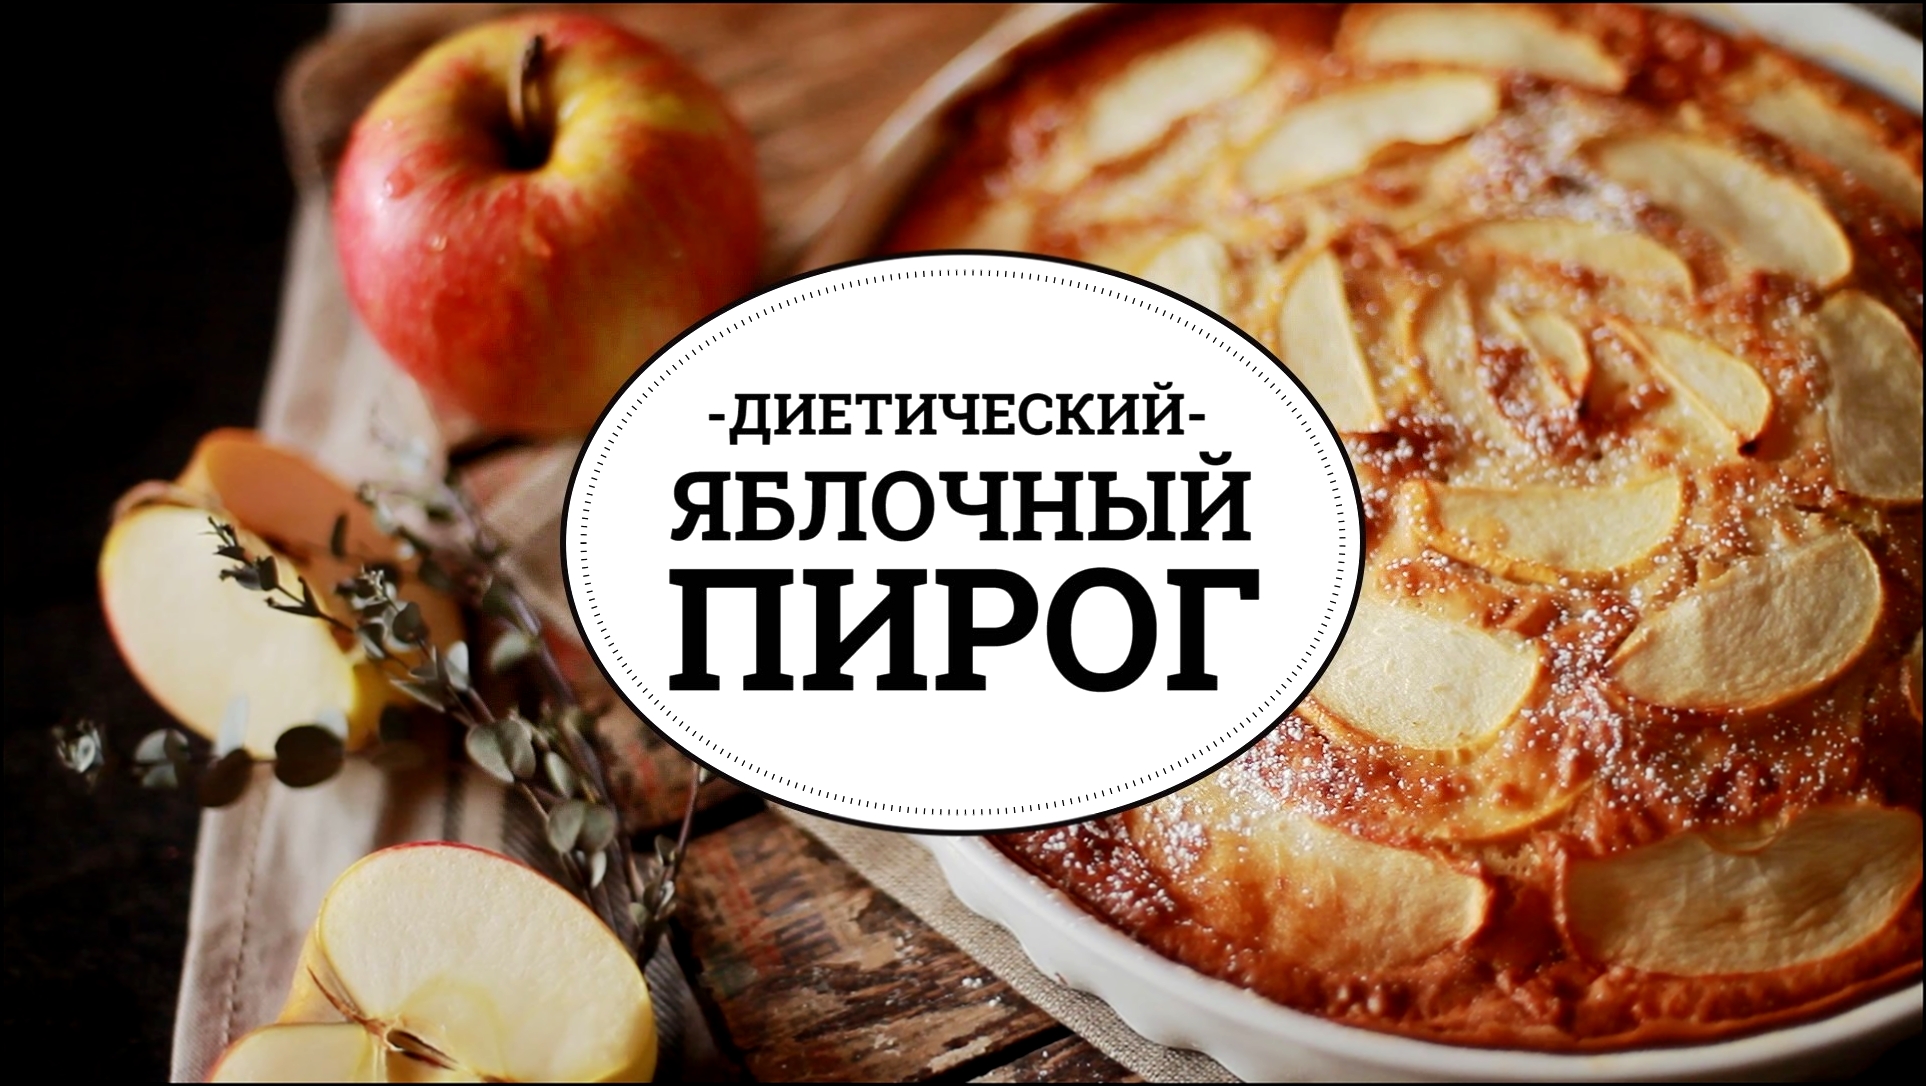 Диетический яблочный пирог [sweet & flour] 